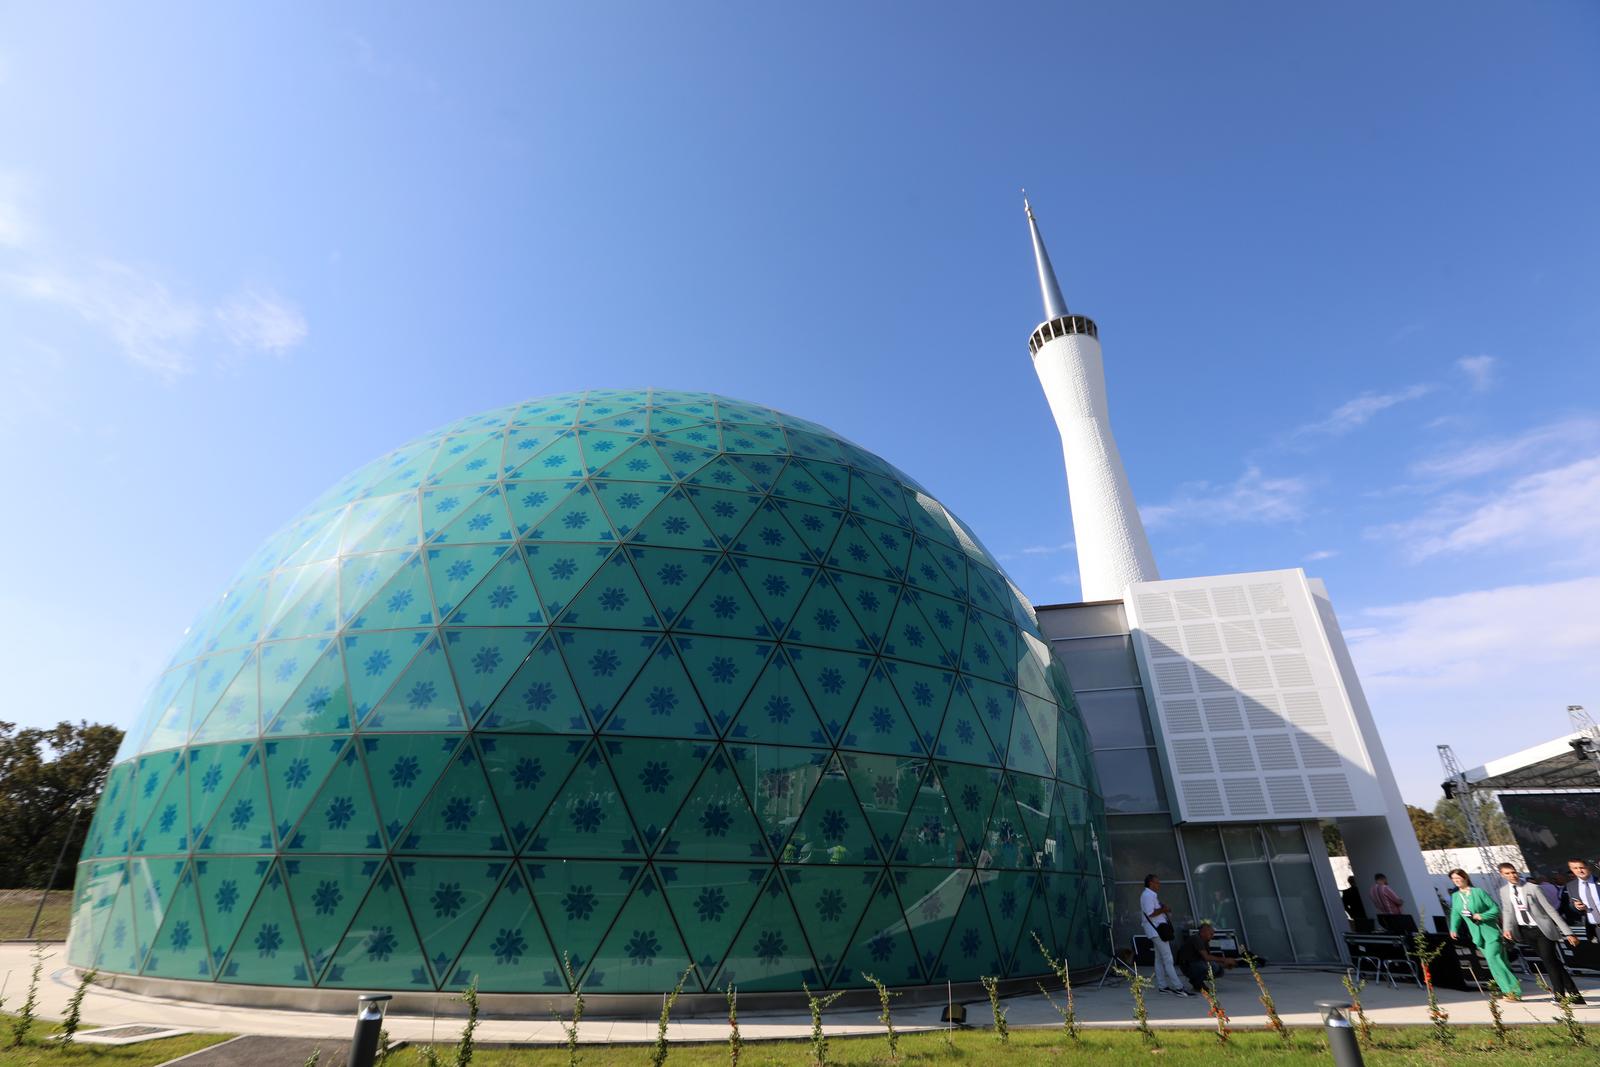 08.09.2022., Sisak - Otvaranje Islamskog kulturnog centra i dzamije. Photo: Robert Anic/PIXSELL